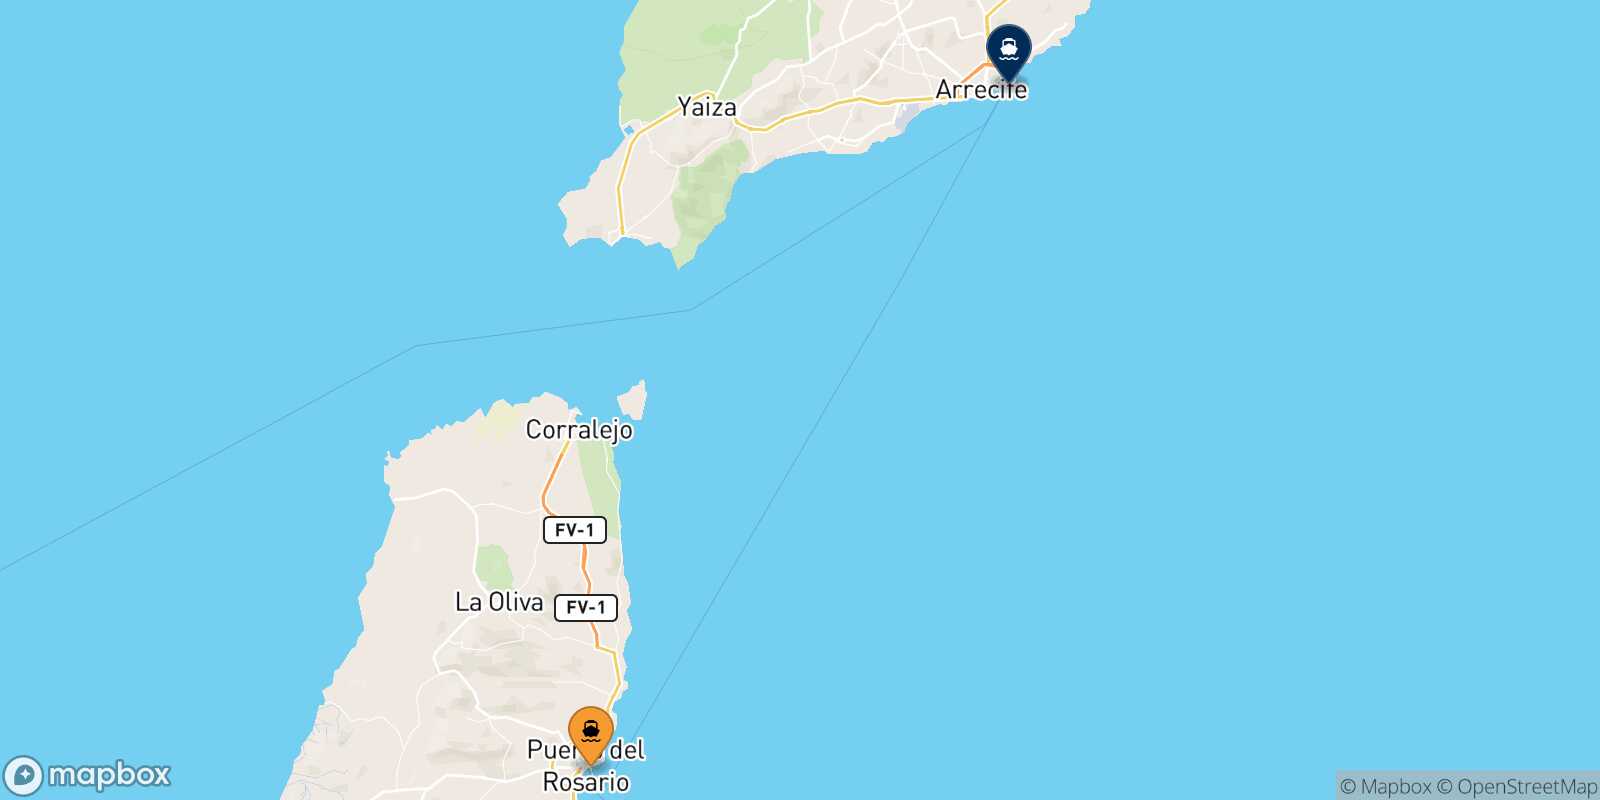 Mapa de la ruta Puerto Del Rosario (Fuerteventura) Arrecife (Lanzarote)